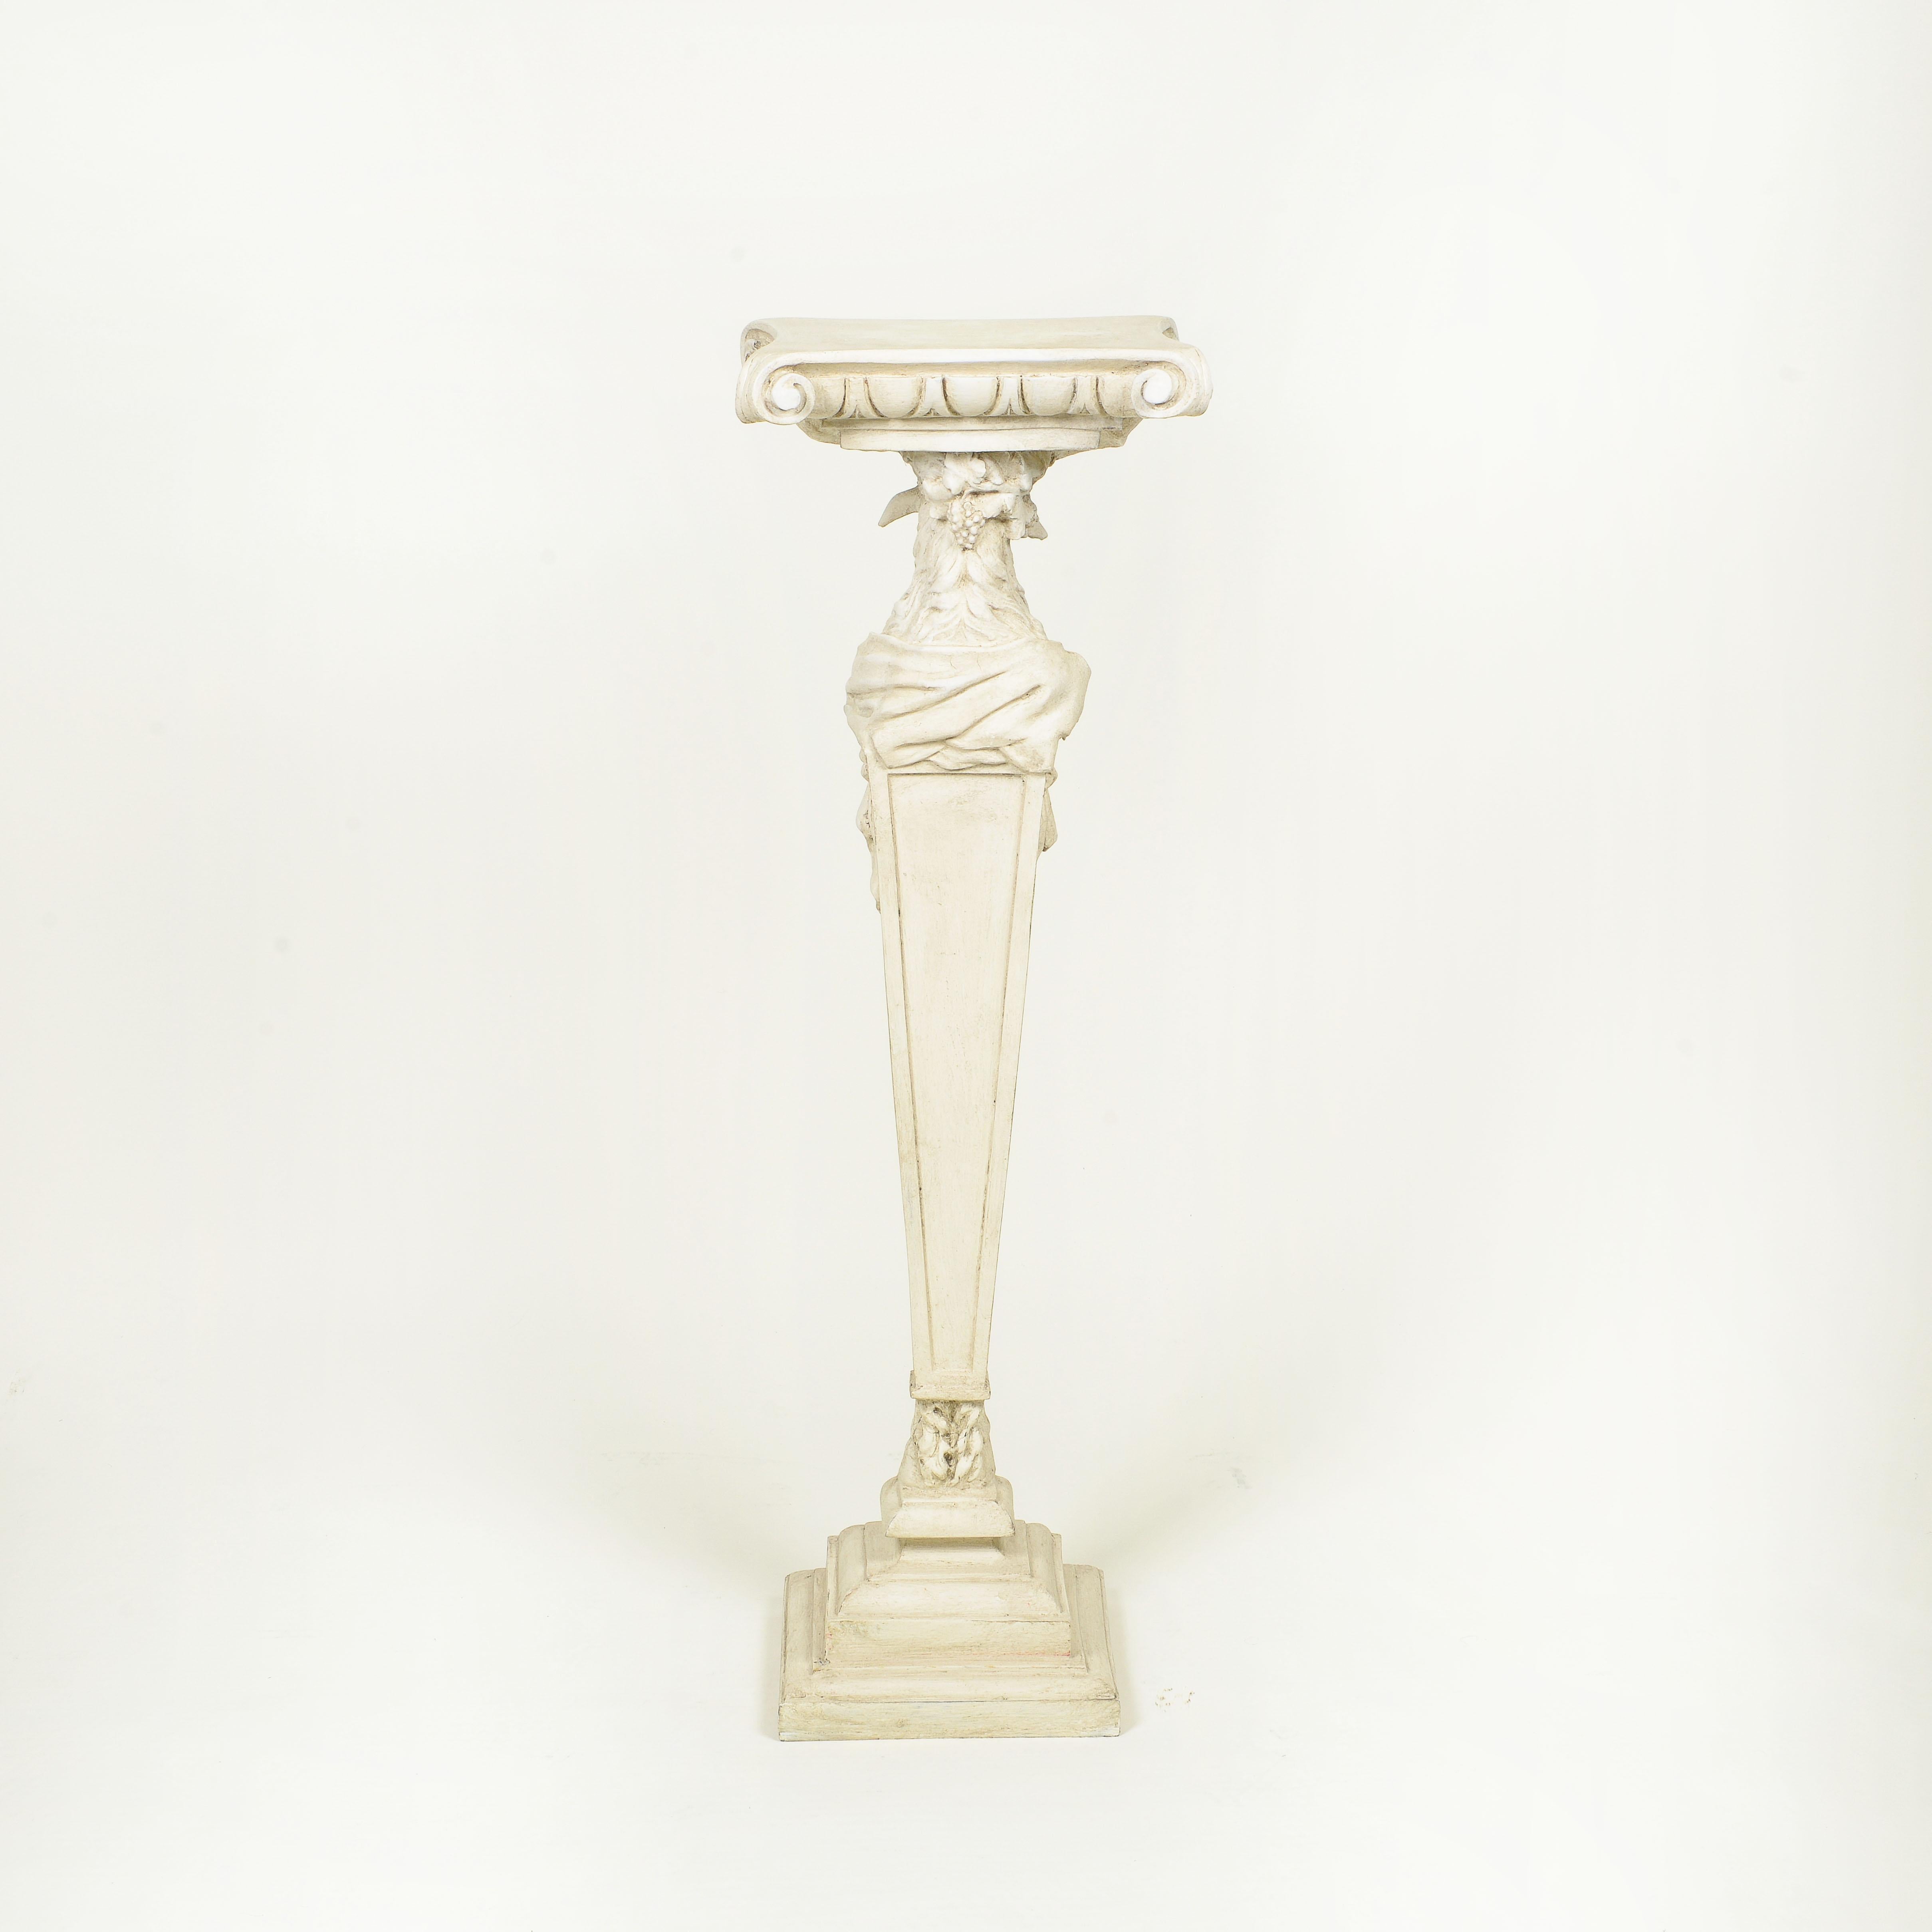 The Pedestal im neoklassischen Stil, weiß bemalt und geschnitzt (Geschnitzt)